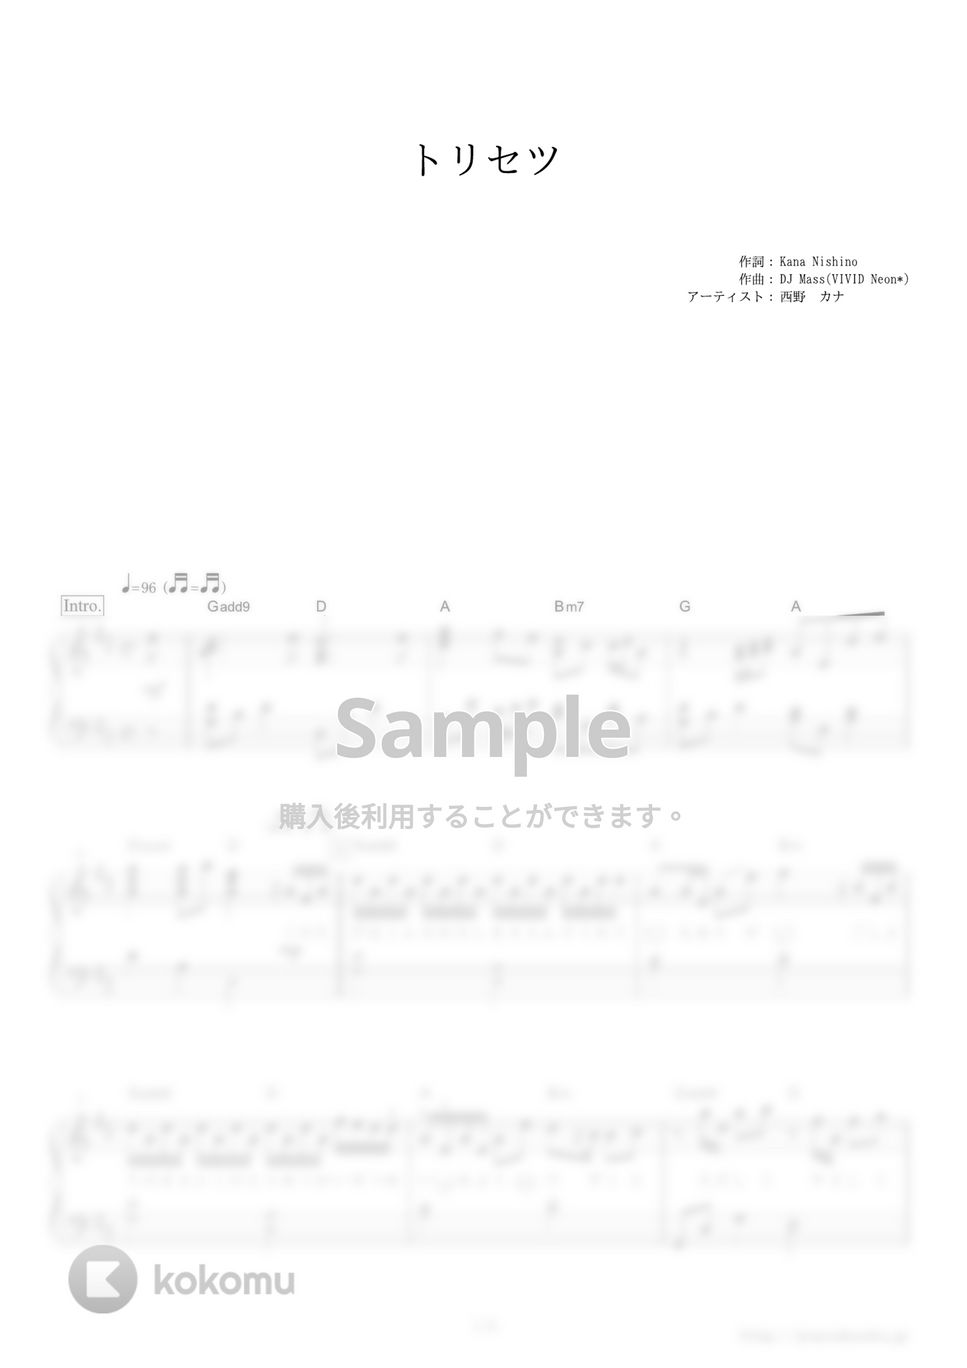 西野カナ - トリセツ (映画『ヒロイン失格』主題歌。) by ピアノの本棚